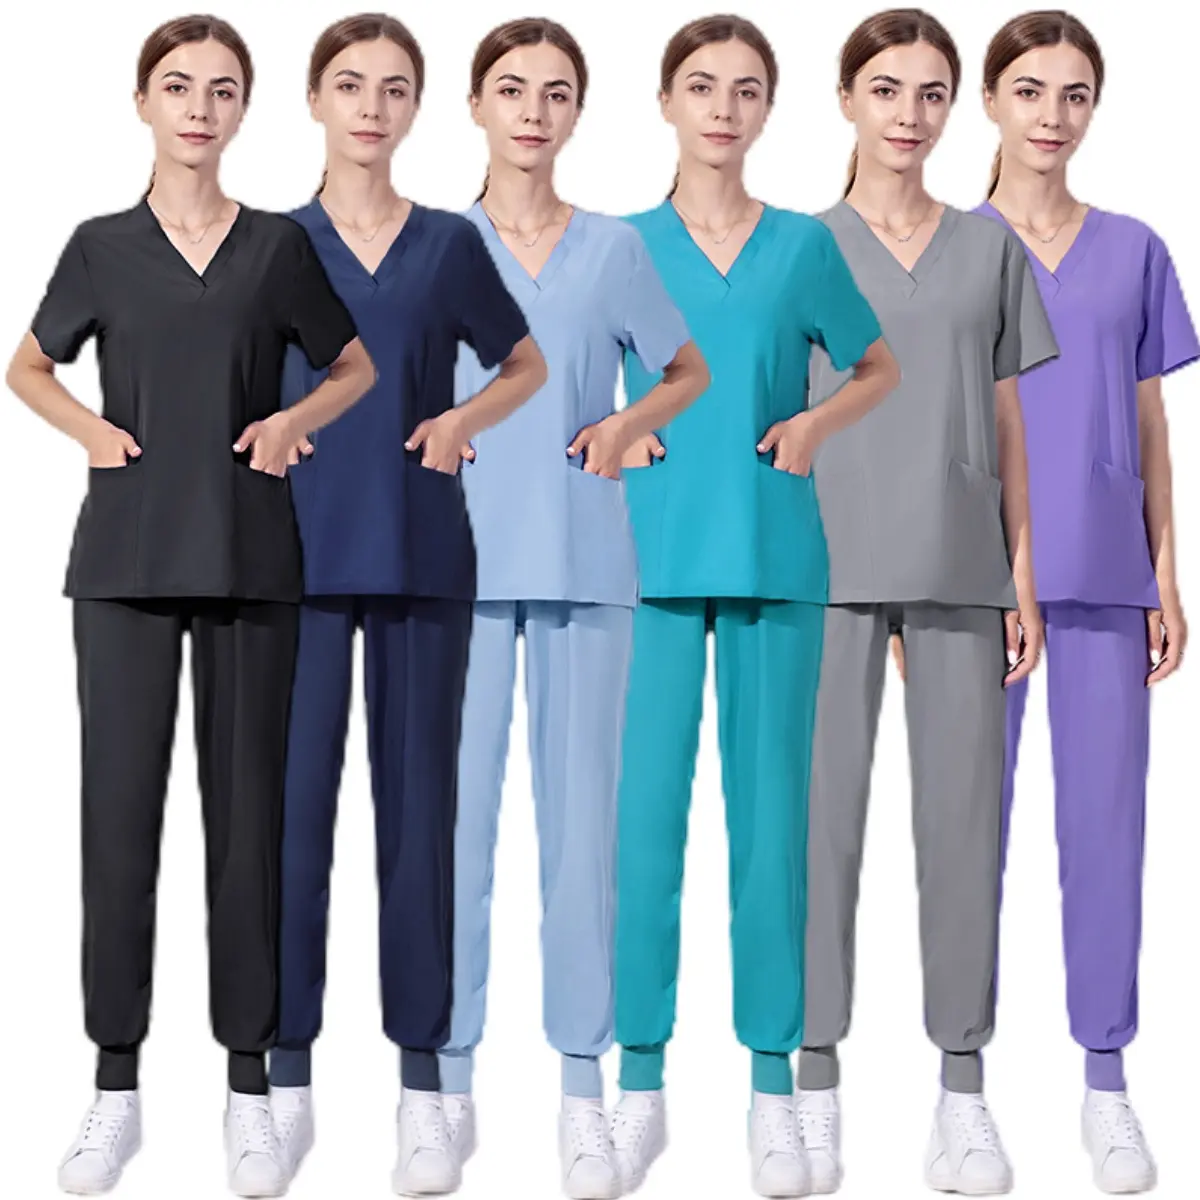 In magazzino 42016LW tute punjabi sottili da donna abito da donna colore grigio tute infermieristiche uniforme scrub set all'ingrosso